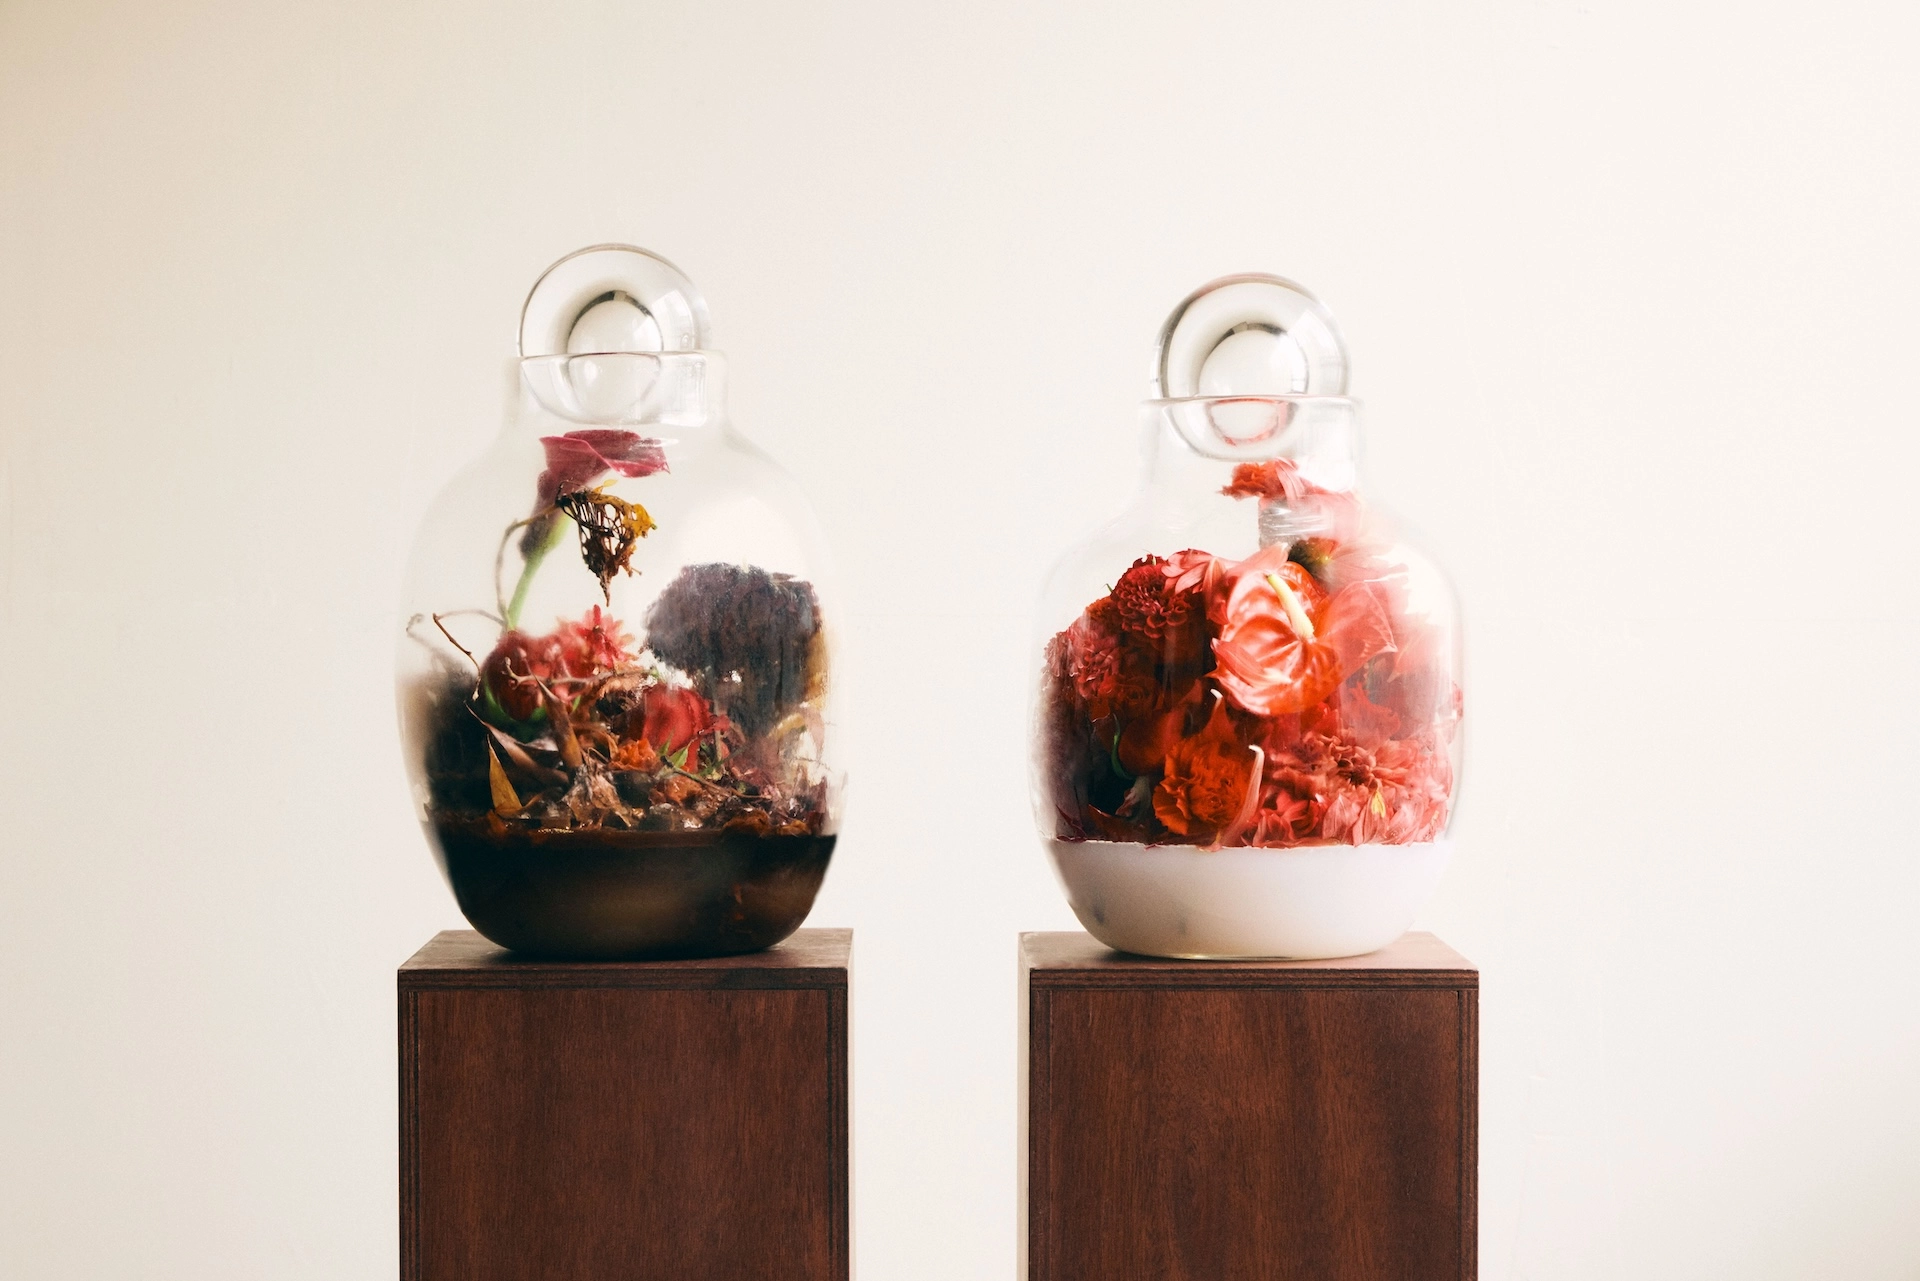 2つのガラス容器に入った赤い花のアレンジメント。左の容器には枯れた花と葉があり、右の容器には鮮やかな赤い花が詰まっている。どちらの容器も木製の台の上に置かれている。